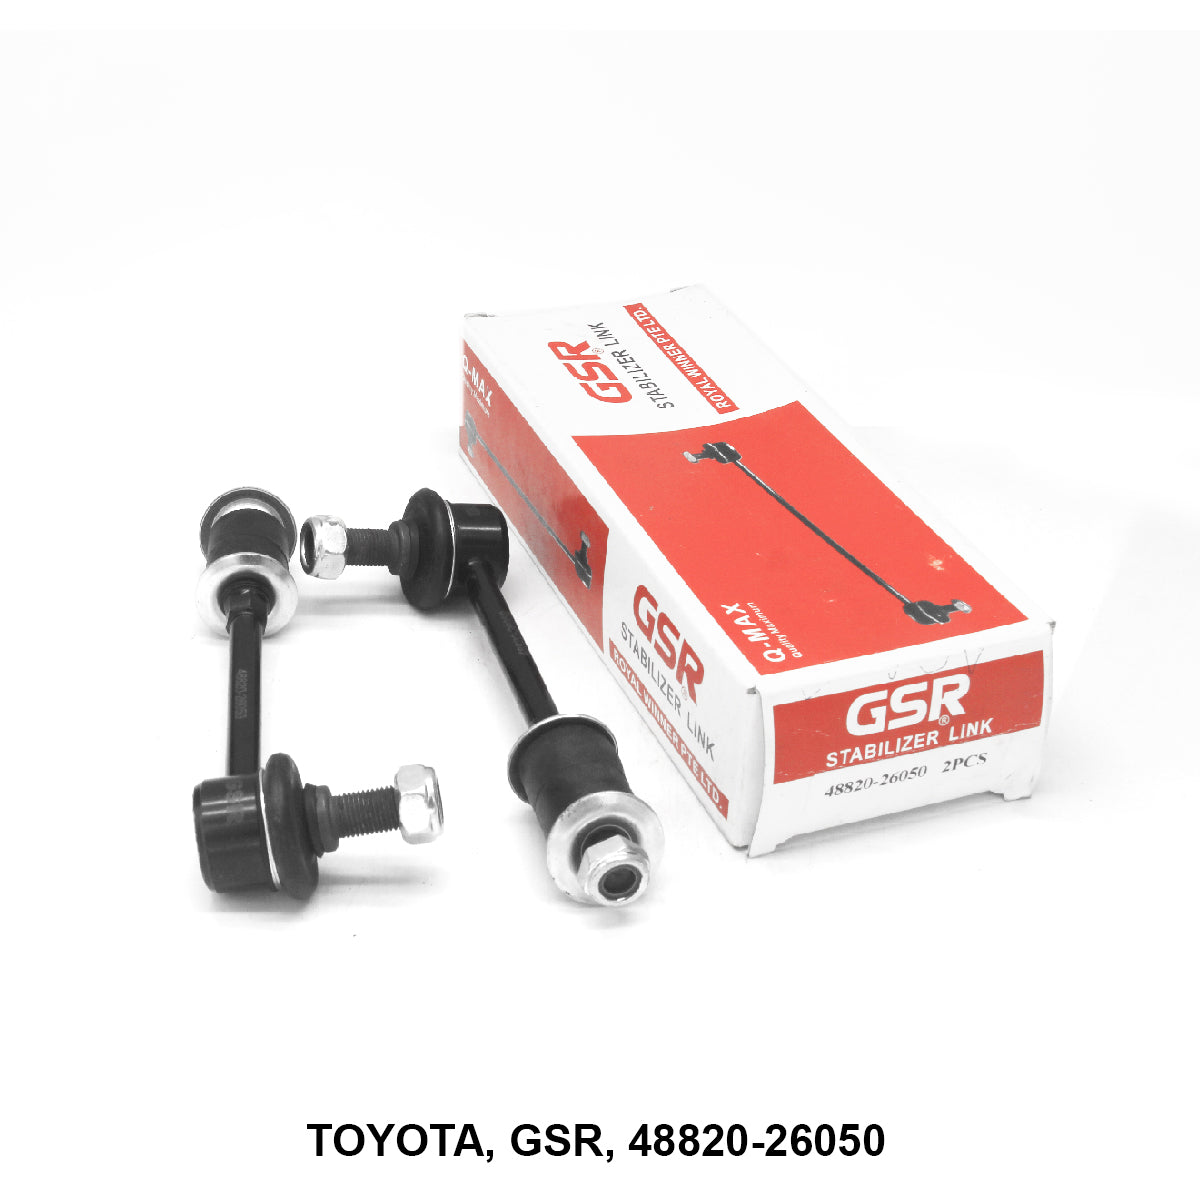 Stabilizer Link, GSR, 48820-26050 (006001)